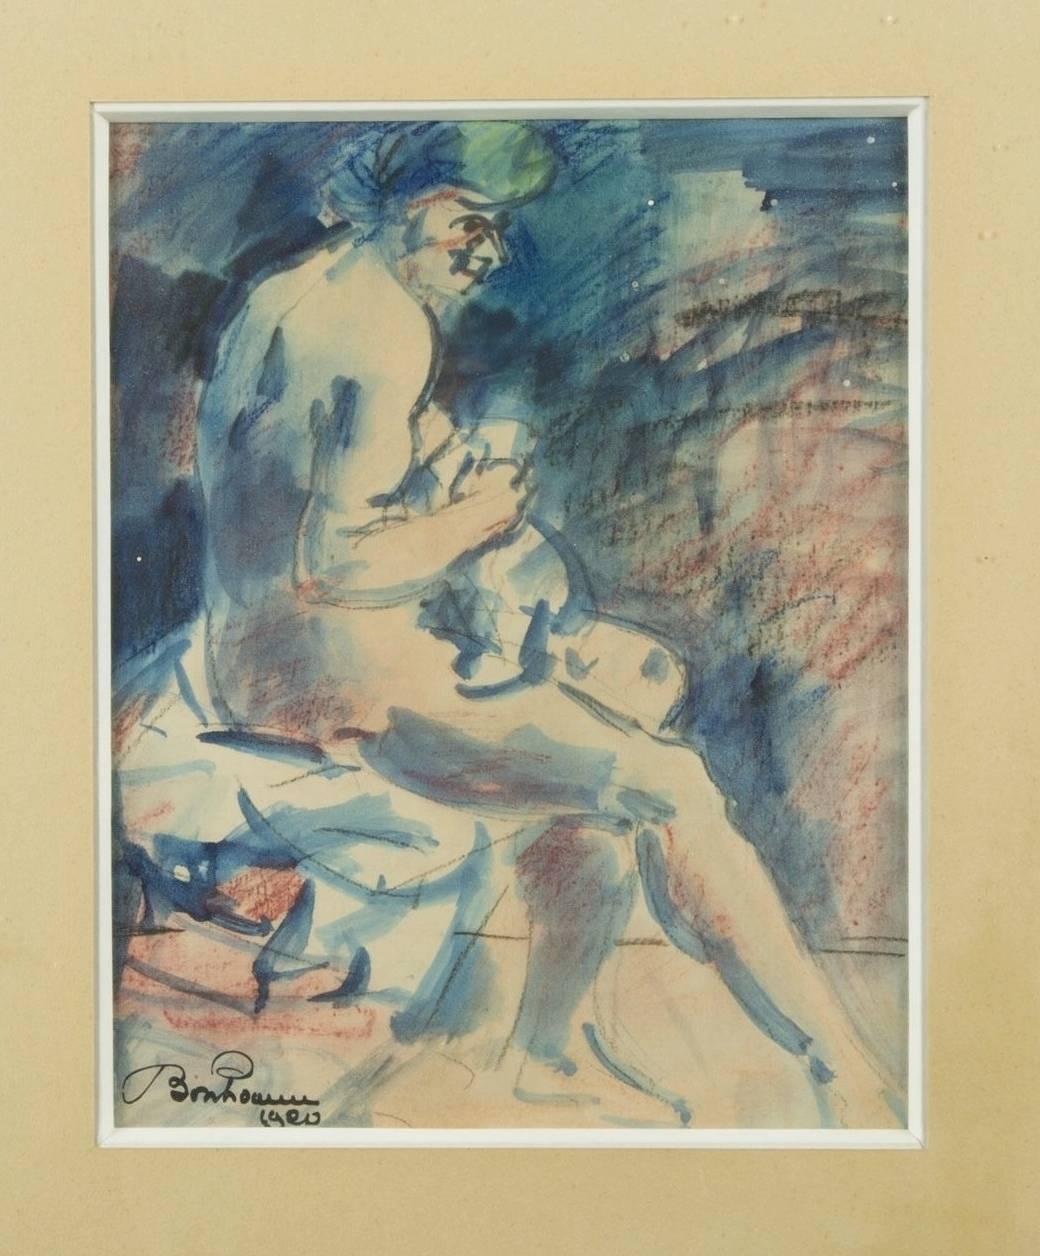 The sitting nude woman - Art by Léon BONHOMME